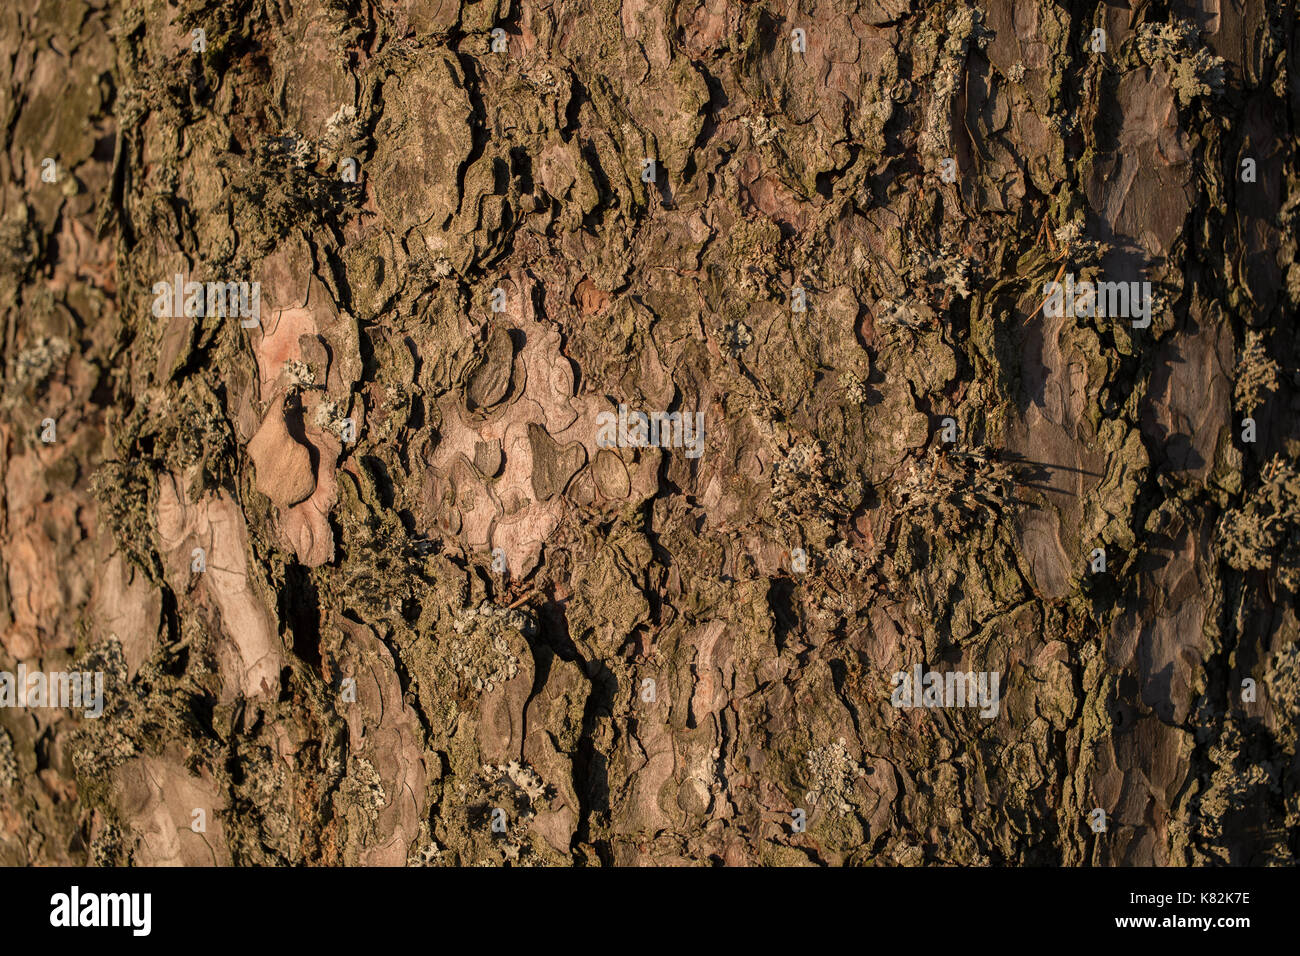 tree bark close-up Stock Photo